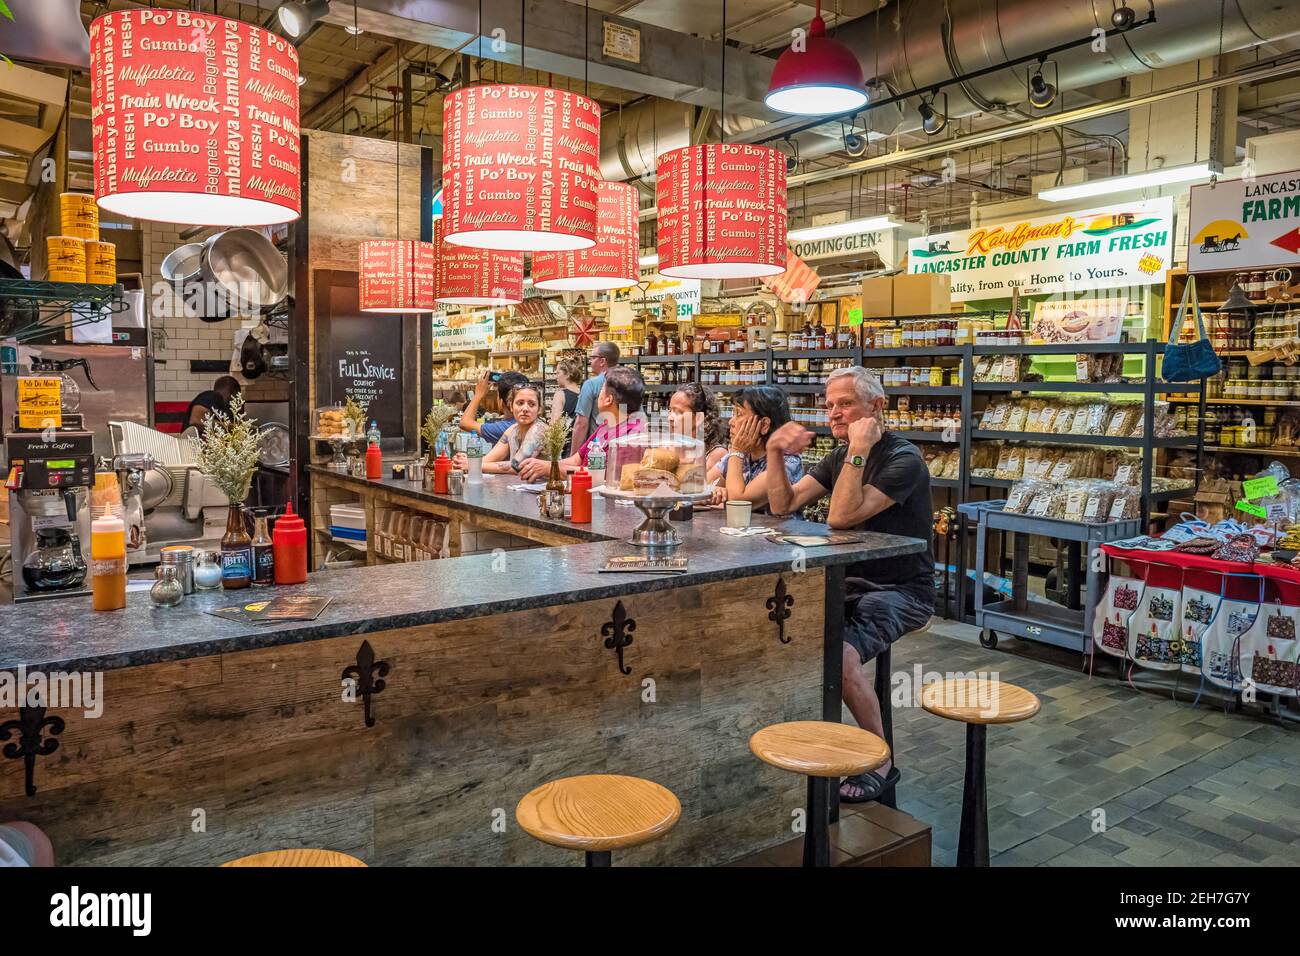 Eatery inside the landmark Reading Terminal Market in downtown Philadelphia, Pennsylvania, USA Stock Photo